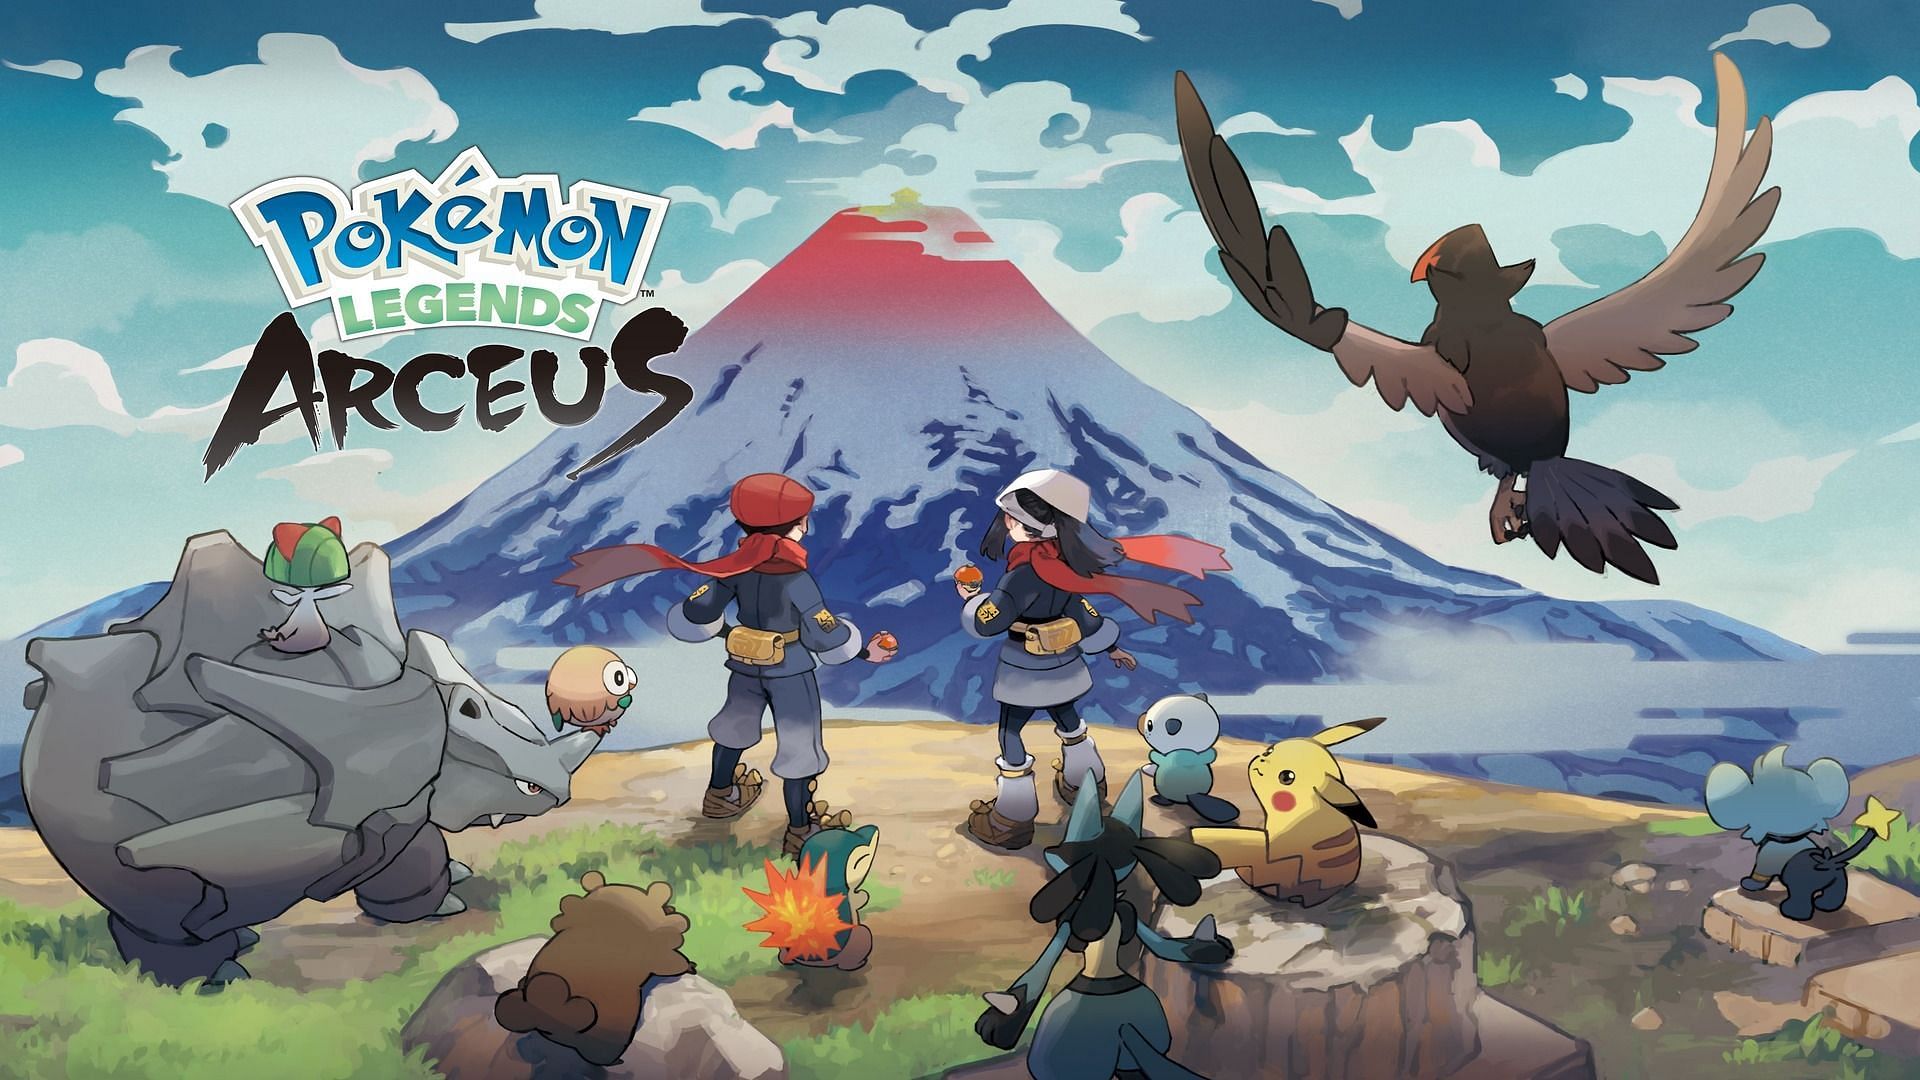 Official artwork for Pokemon Legends: Arceus